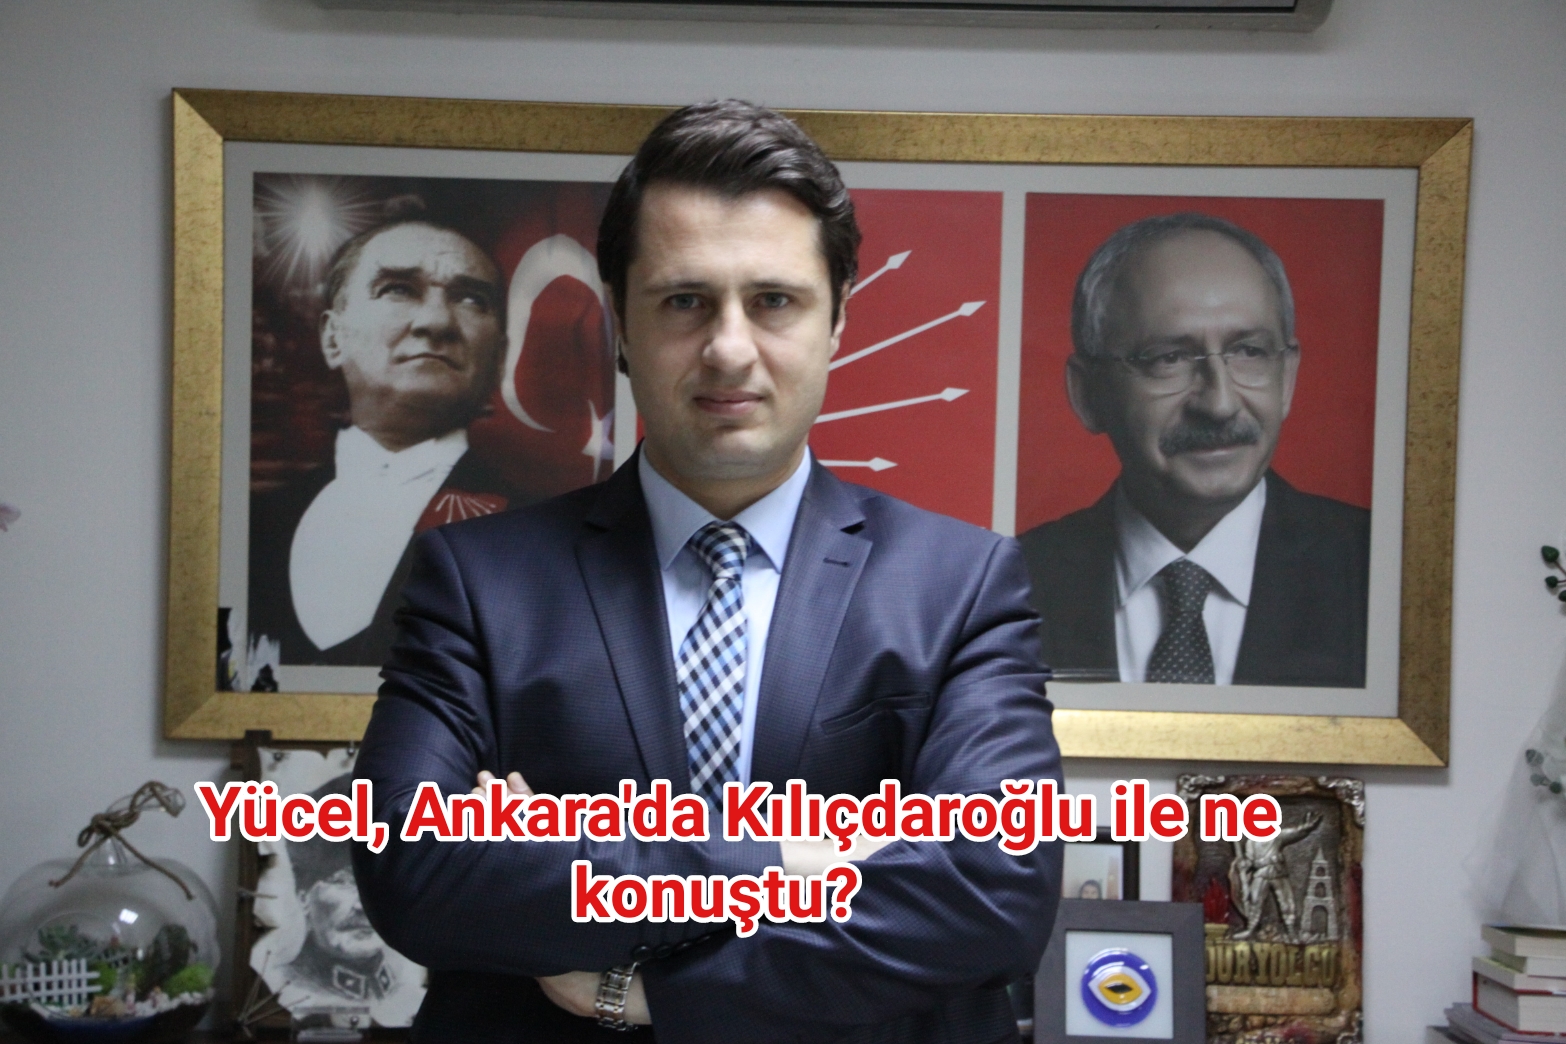 Yücel, Ankara’da Kılıçdaroğlu ile ne konuştu?